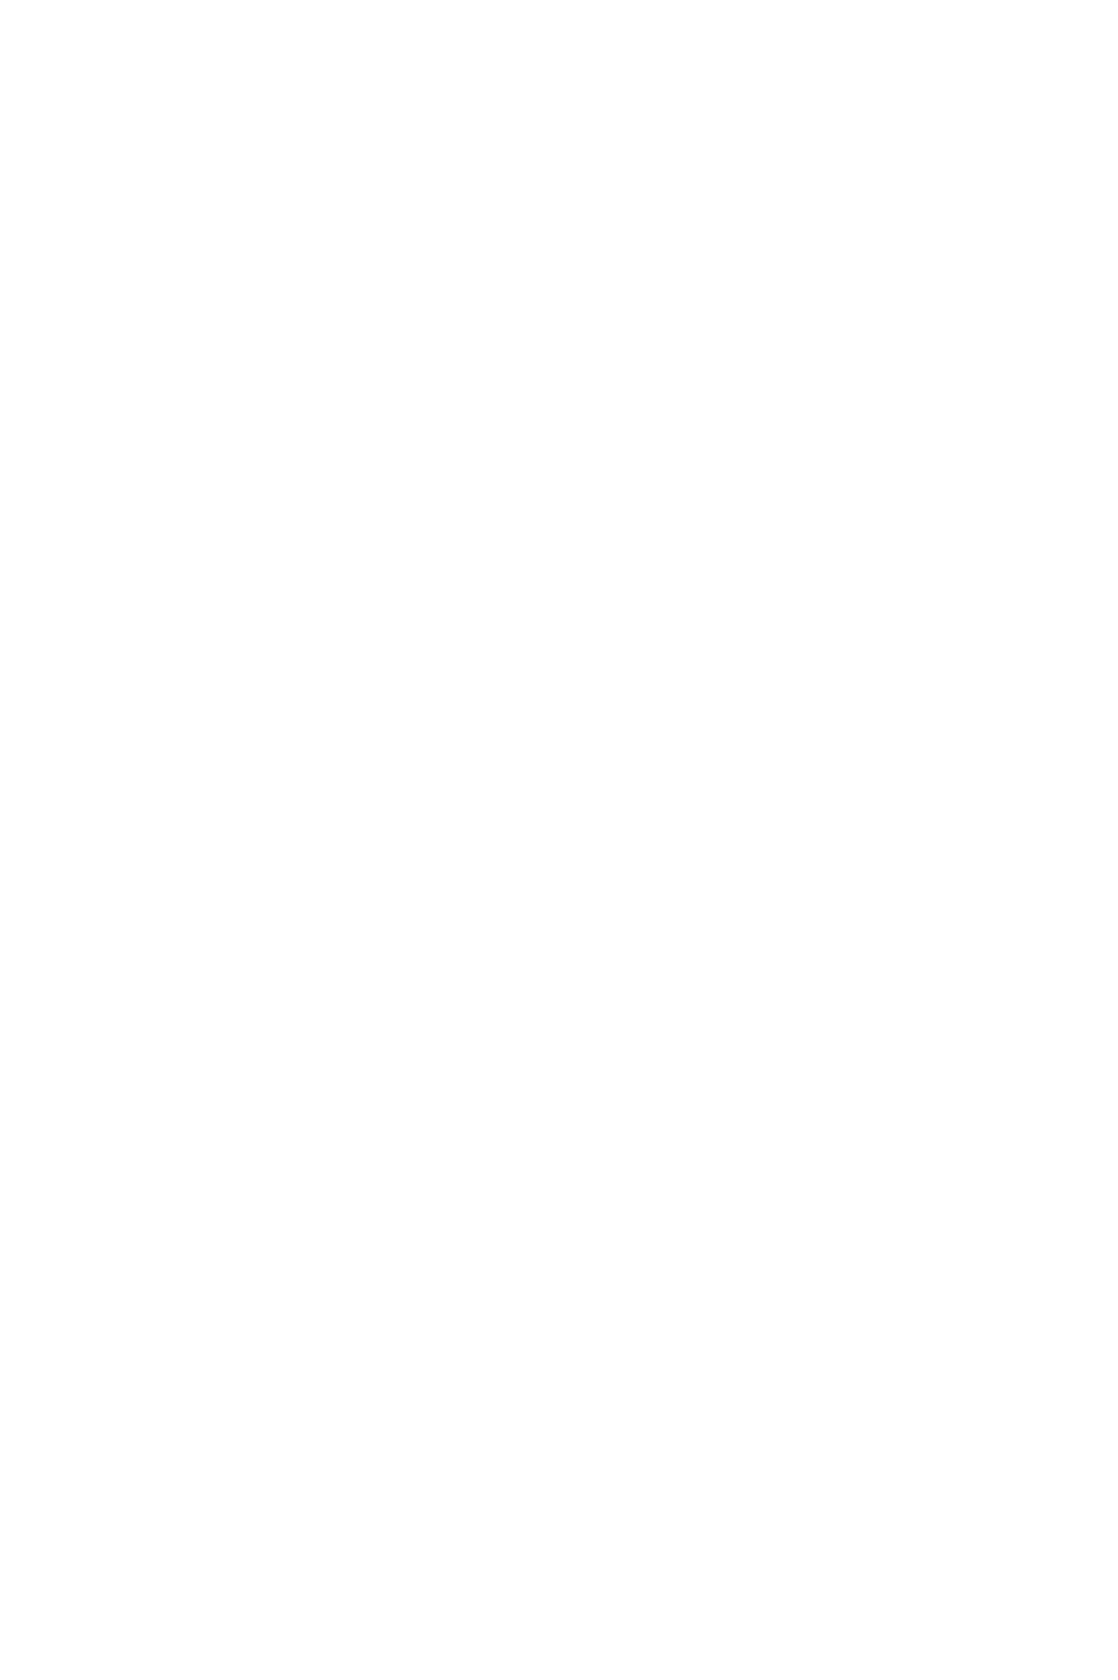 Пиджак женский однобортный с молниями большого размера заказать пошив в ателье СПб с доставкой по России, в Беларусь и Казахстан